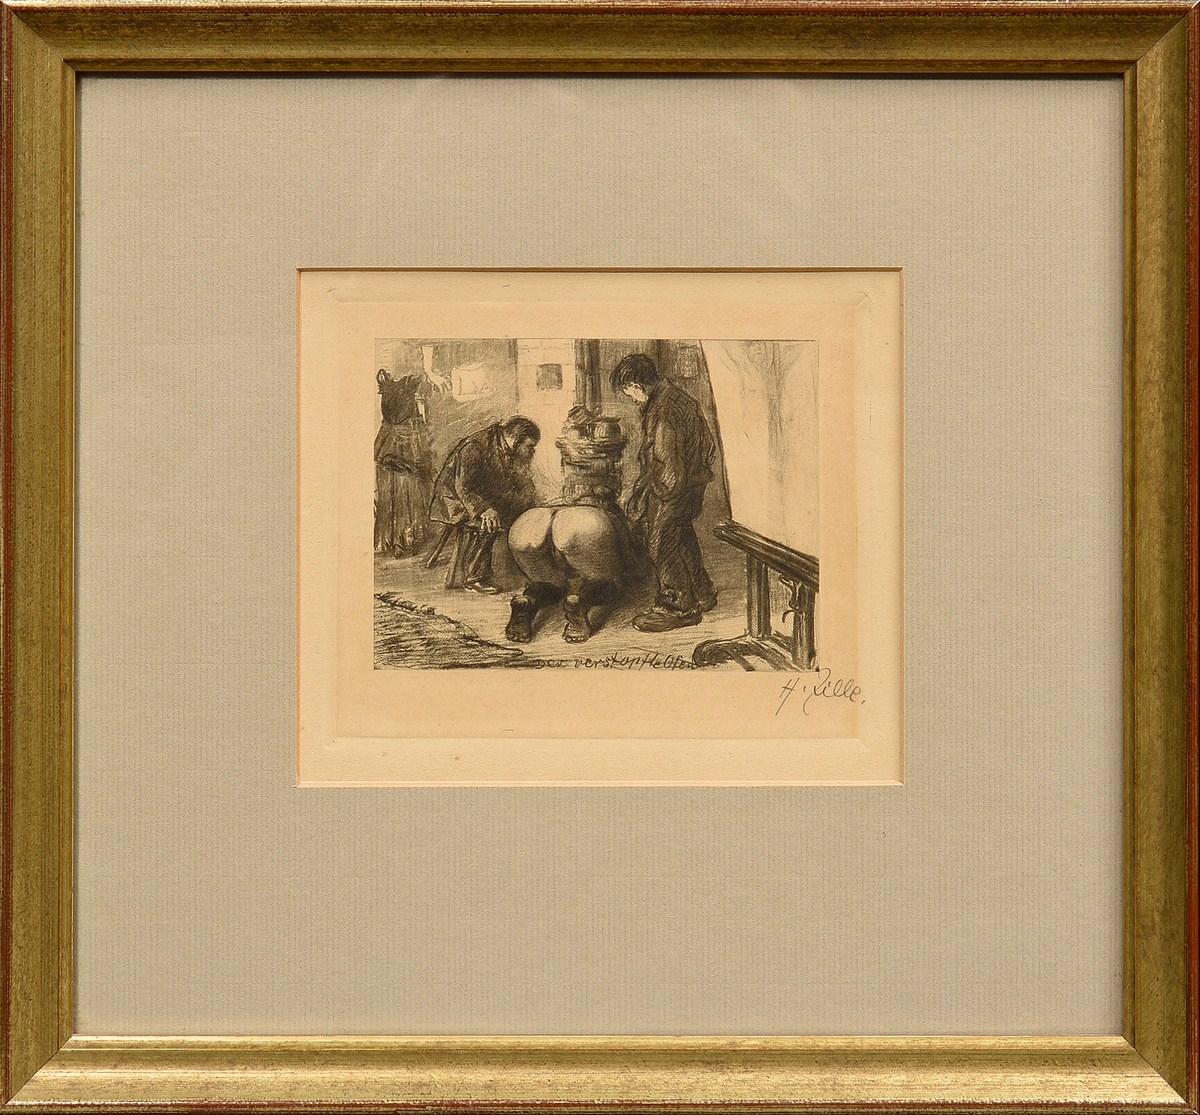 Zille, Heinrich (1858-1929) ‘Der verstopfte Ofen’ c. 1901, heliogravure, sign. b.r., PM 11,4x13,2cm - Image 2 of 3